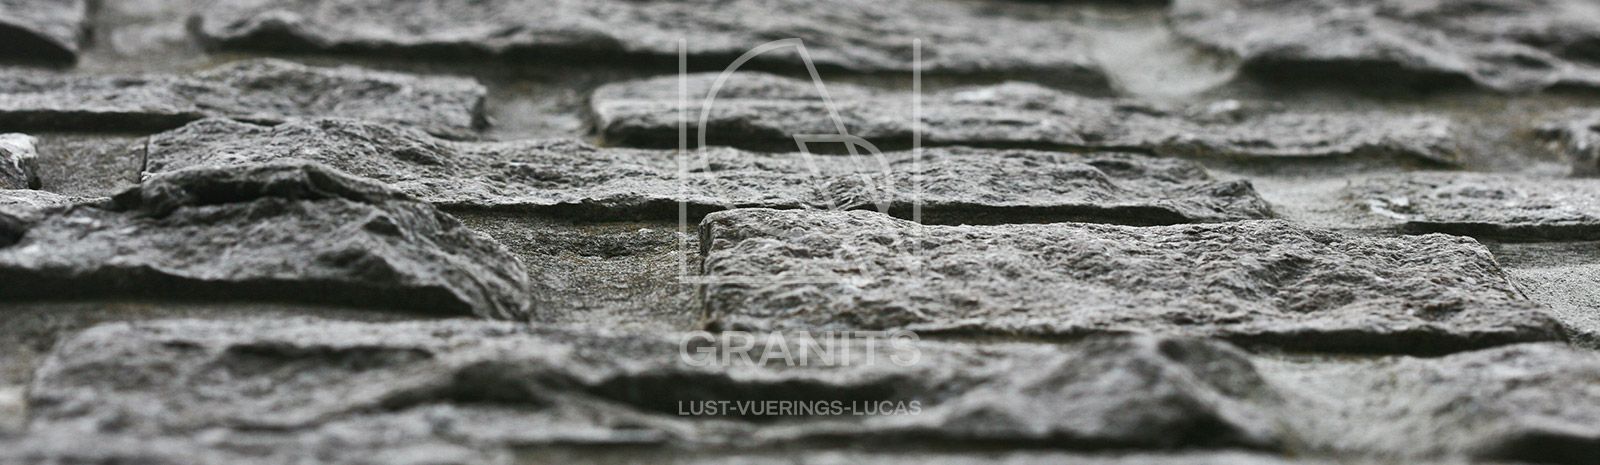 Granits Lust-Vuerings-Lucas - Pierre bleue